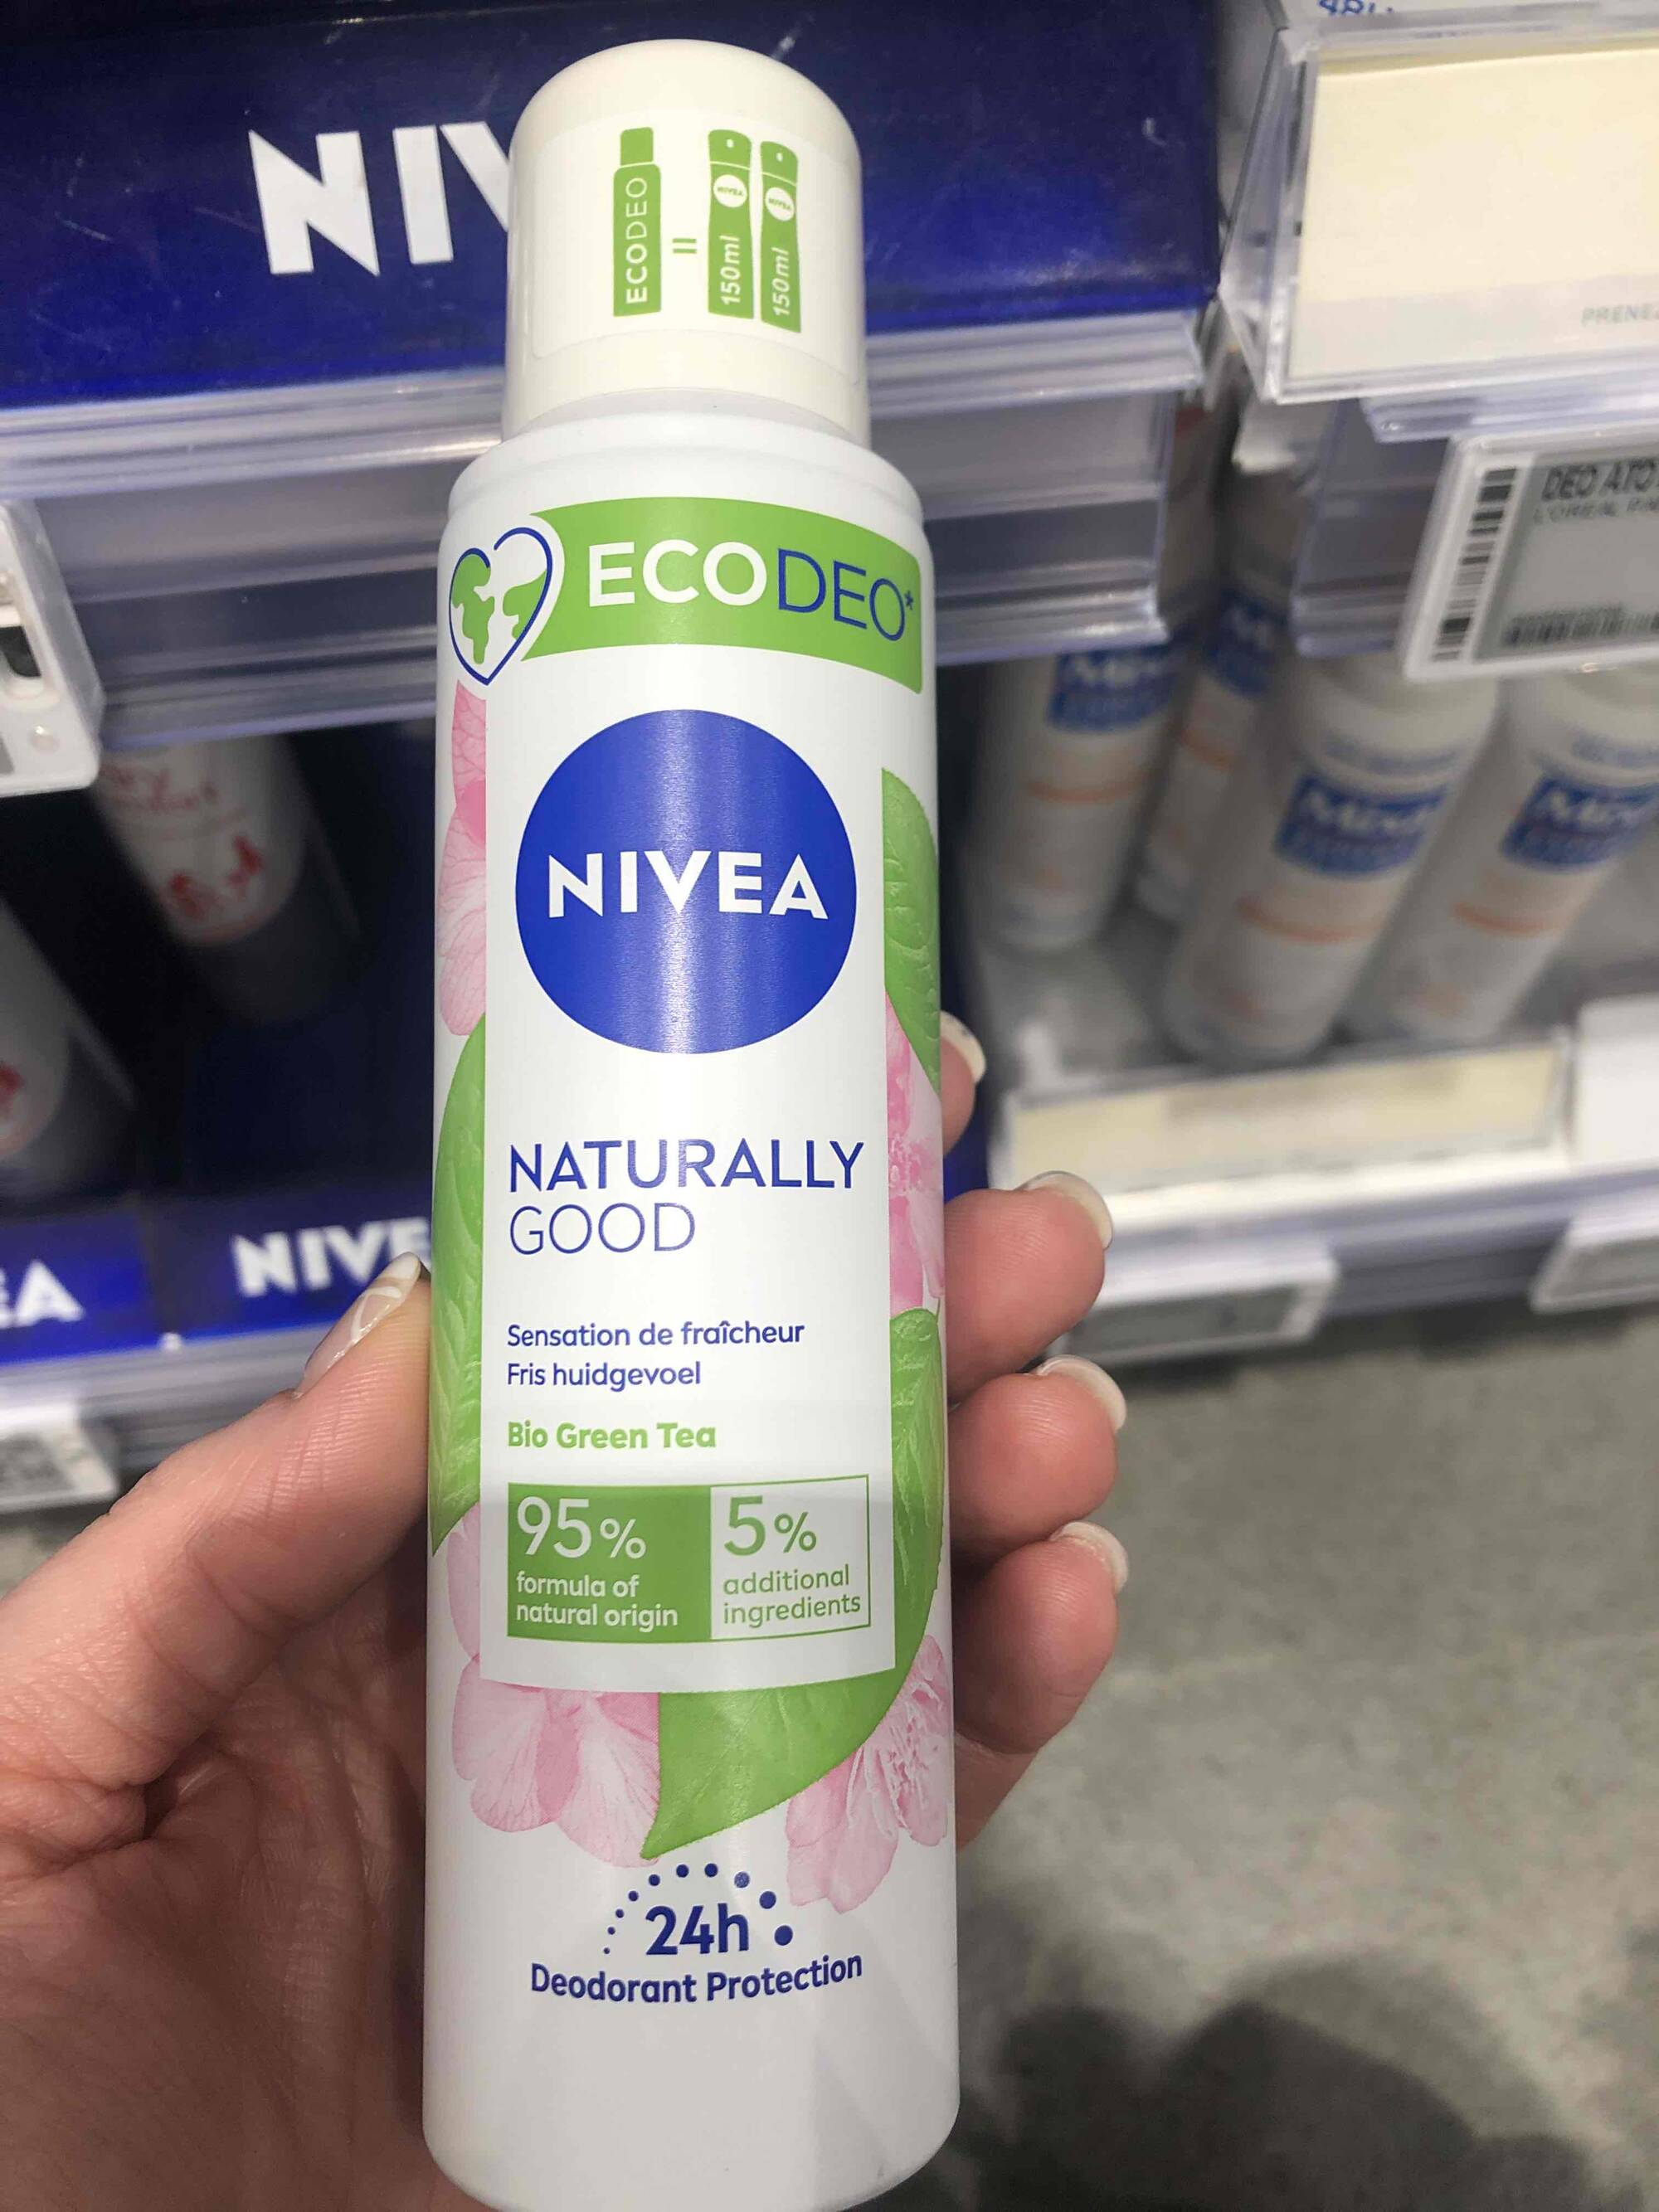 NIVEA - Naturally good - Ecodéo bio green tea